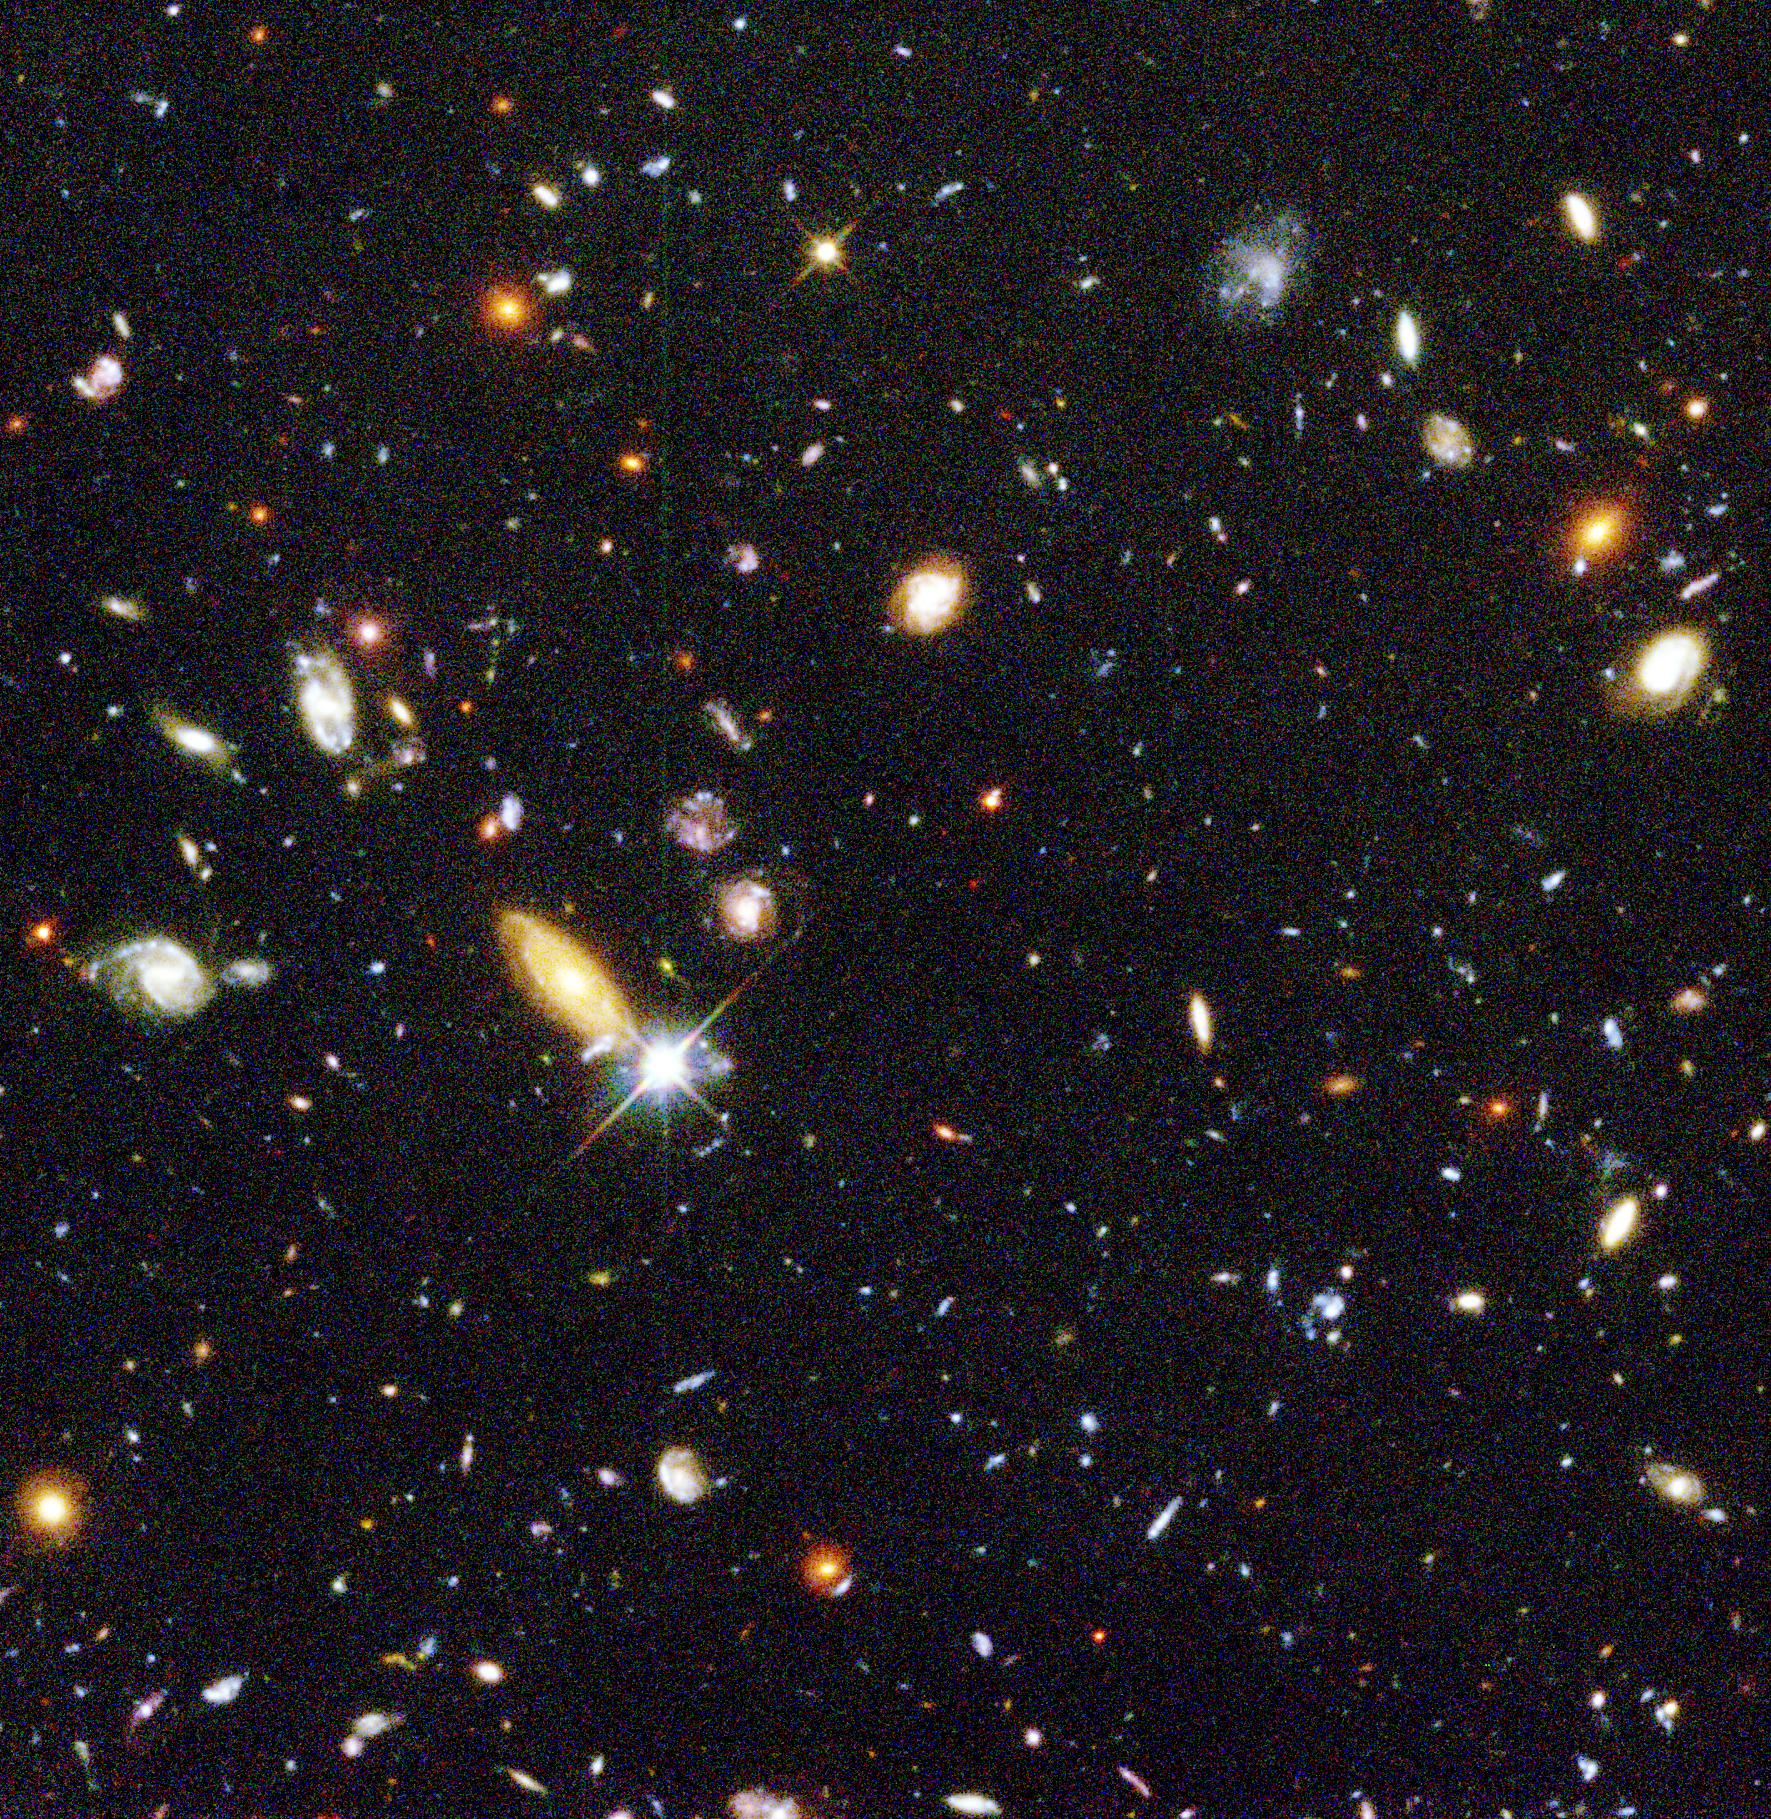 Hubble Deep Field, NASA image